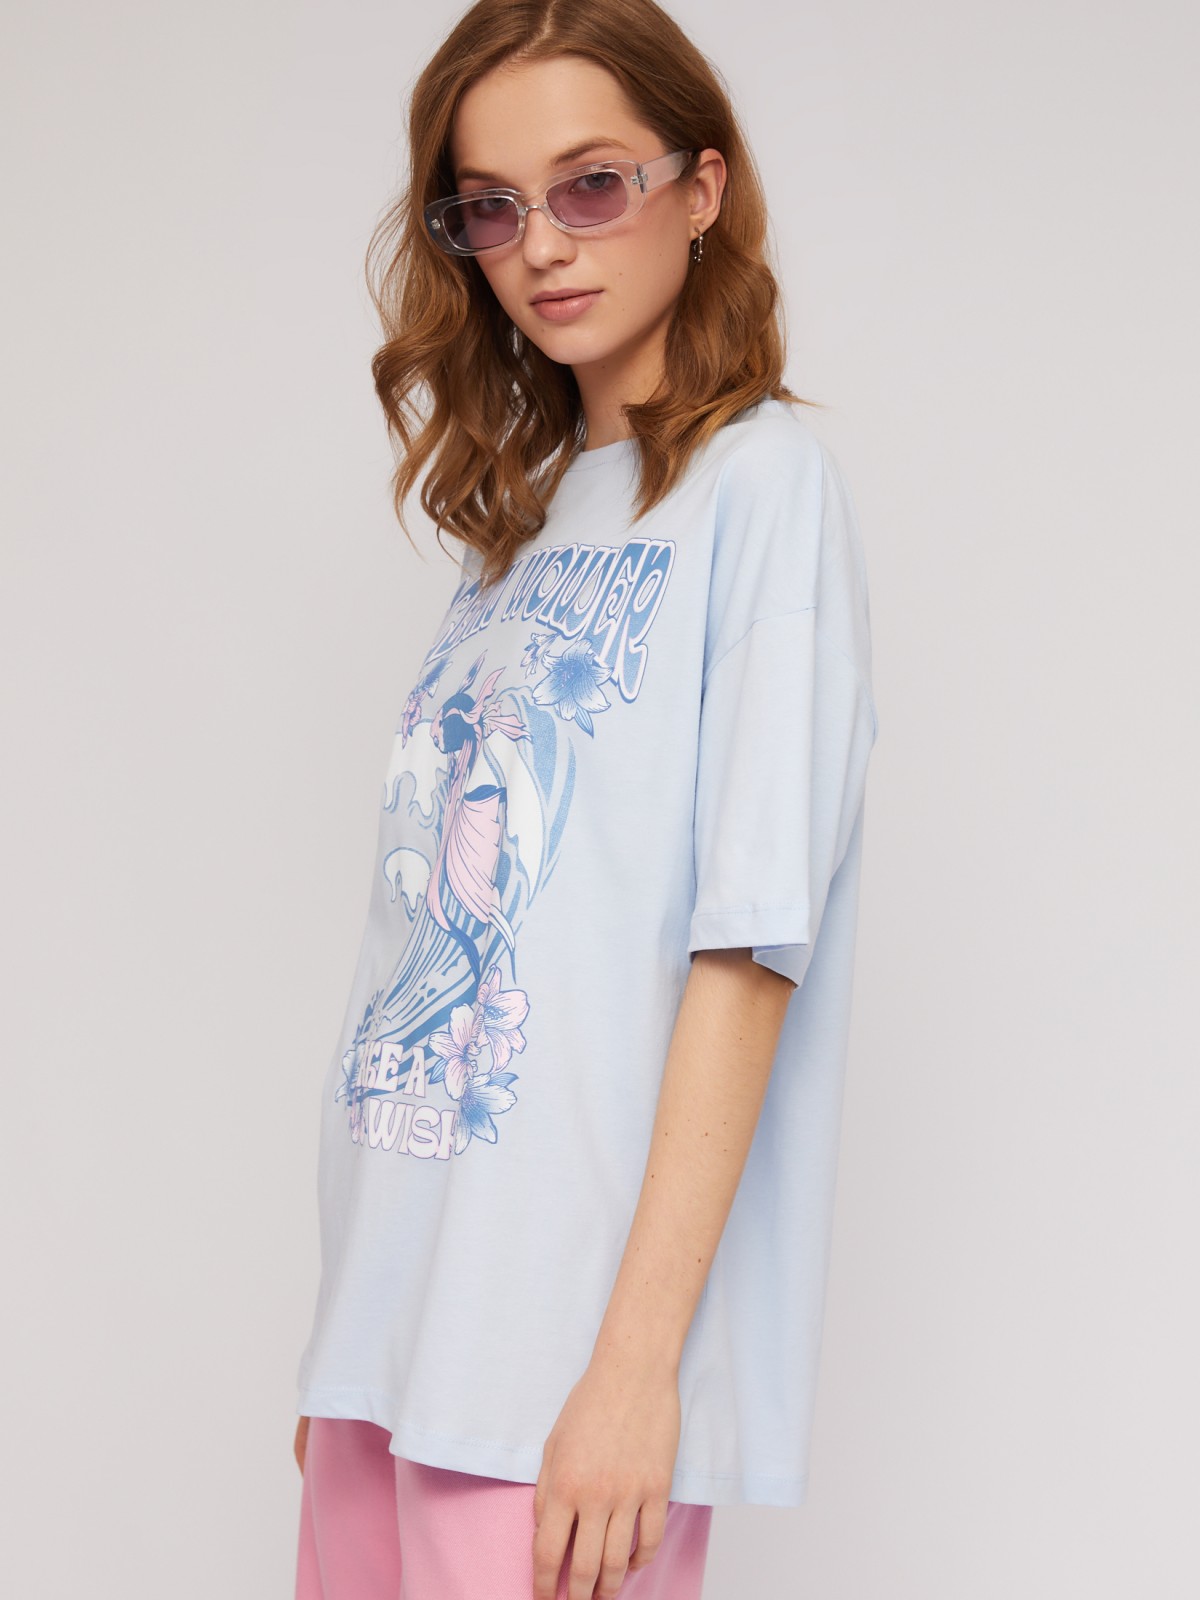 Трикотажная оверсайз футболка из хлопка с принтом zolla N24243292031, цвет светло-голубой, размер XS - фото 5